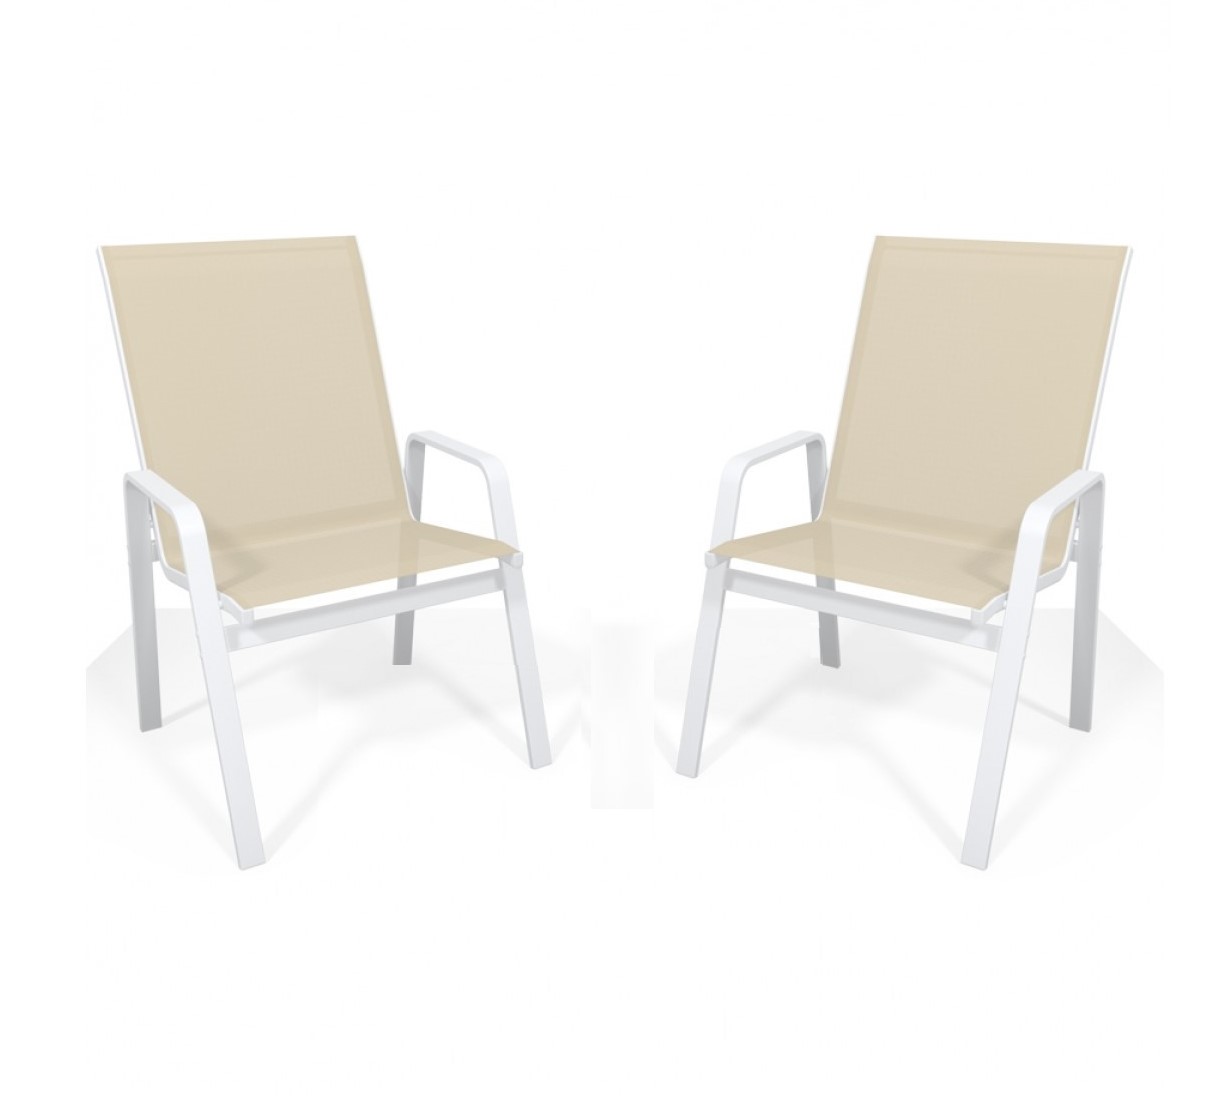 Kit Com 2 Cadeiras Para Piscina Summer - Alumínio Branco, Tela Sling Bege | Empilhável